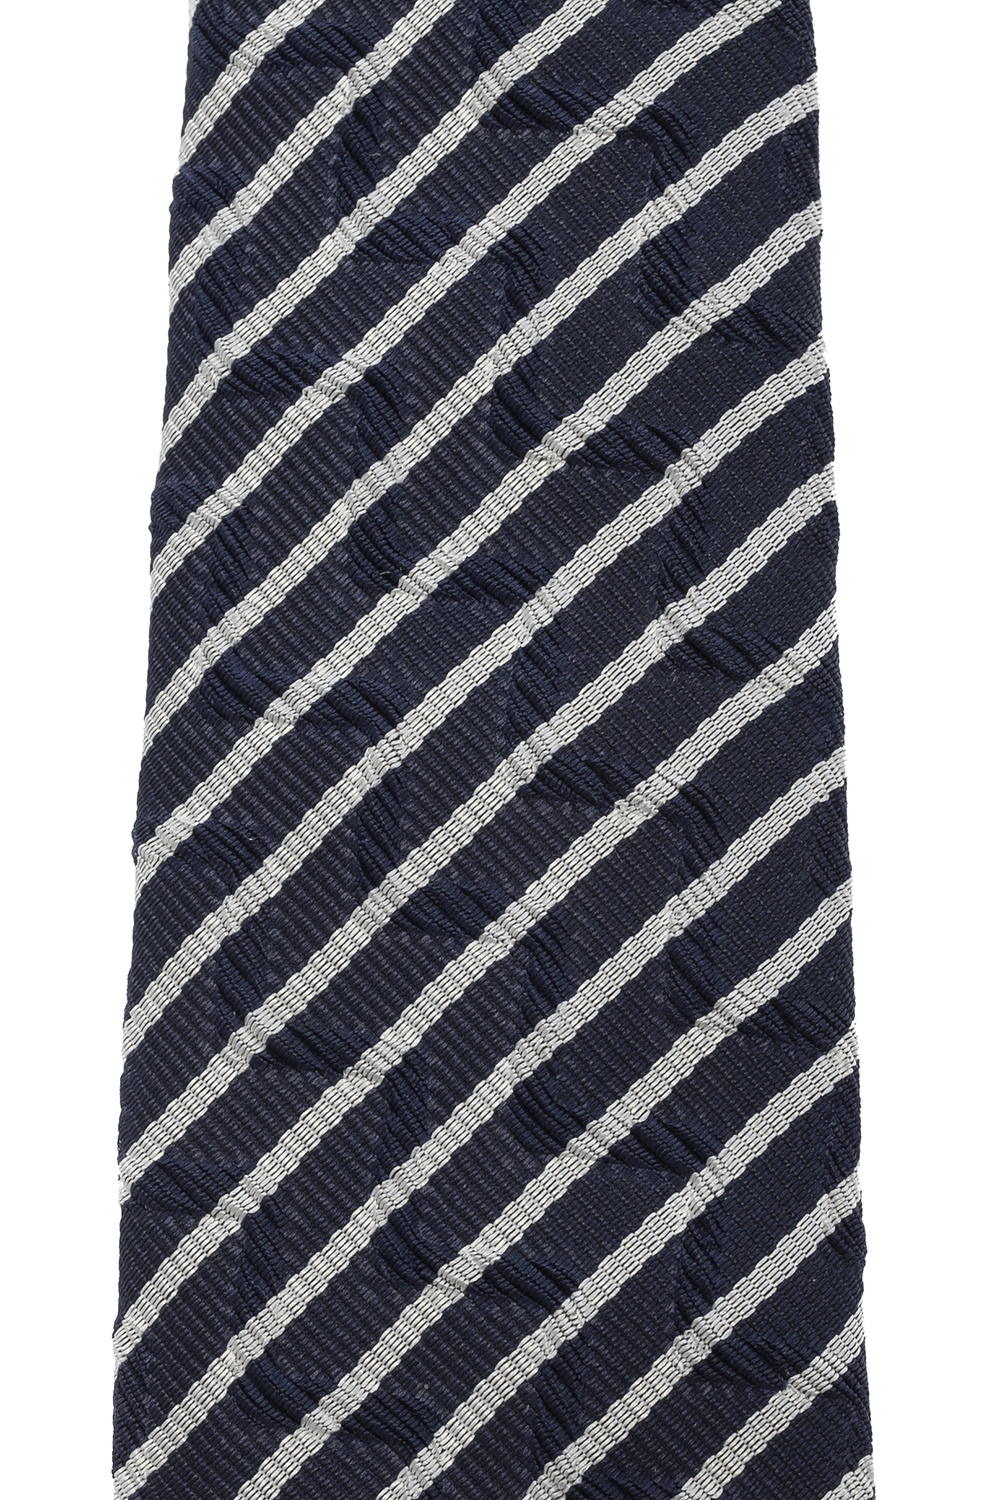 Giorgio Armani Striped tie